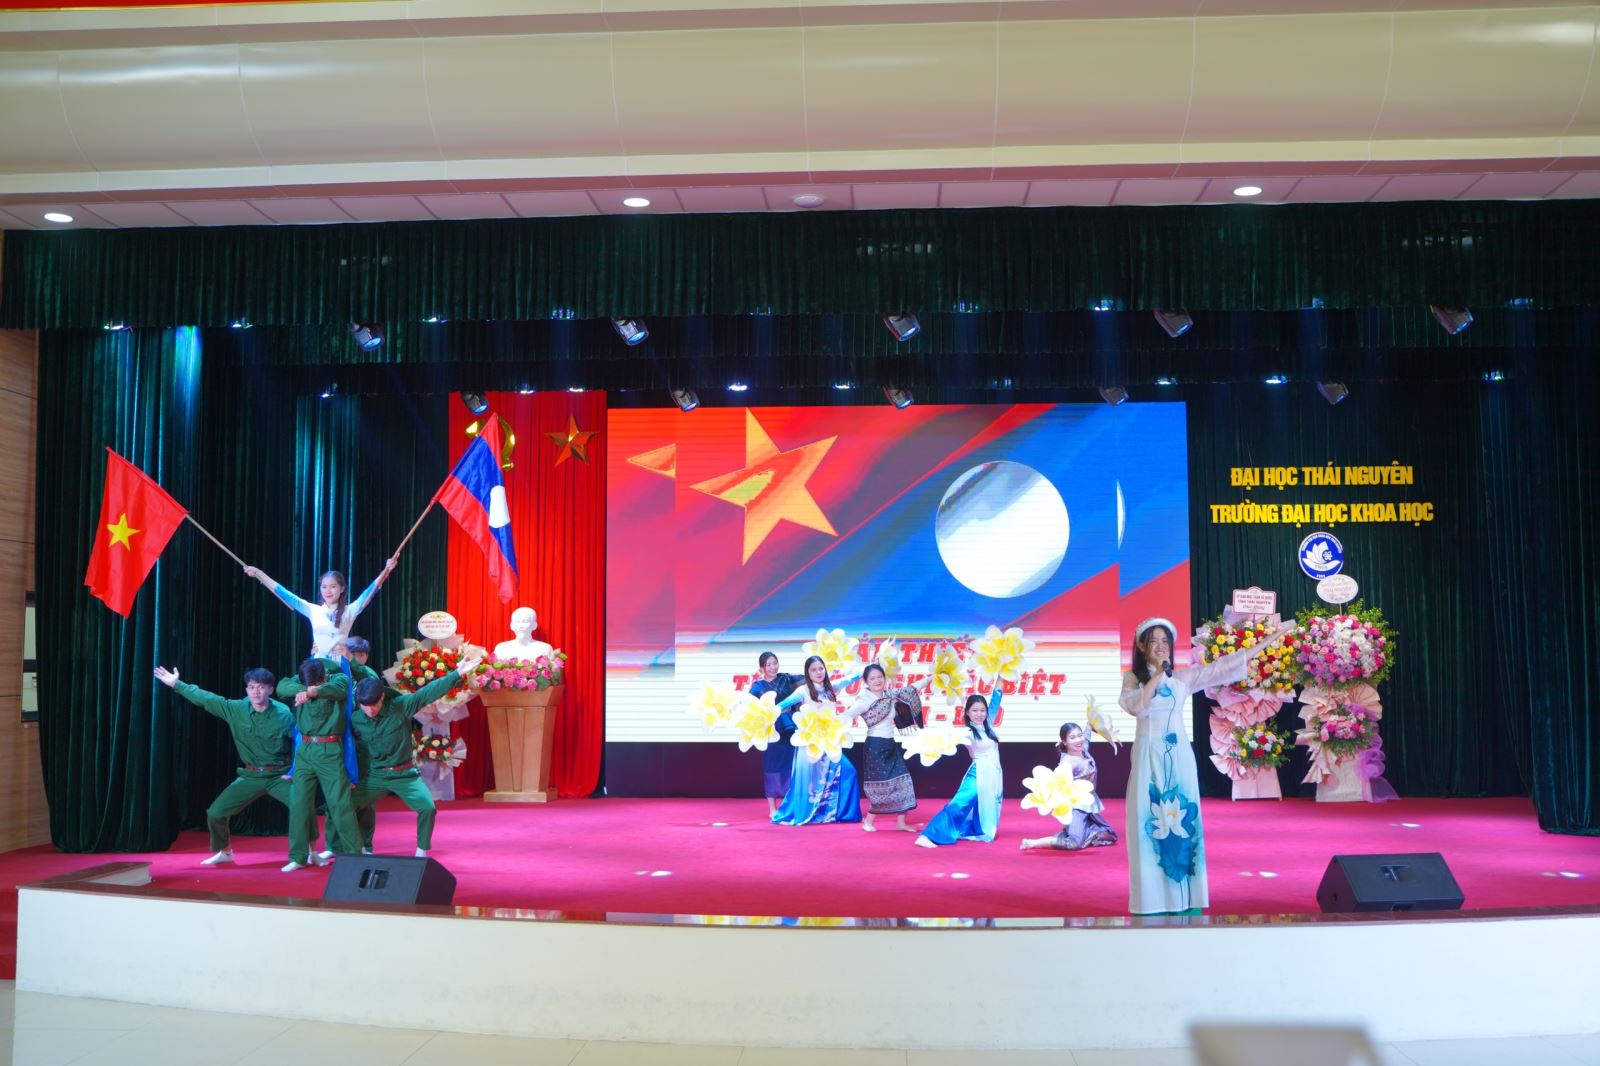 Thi hùng biện tiếng Việt của lưu học sinh Lào tỉnh Thái Nguyên lần thứ nhất năm